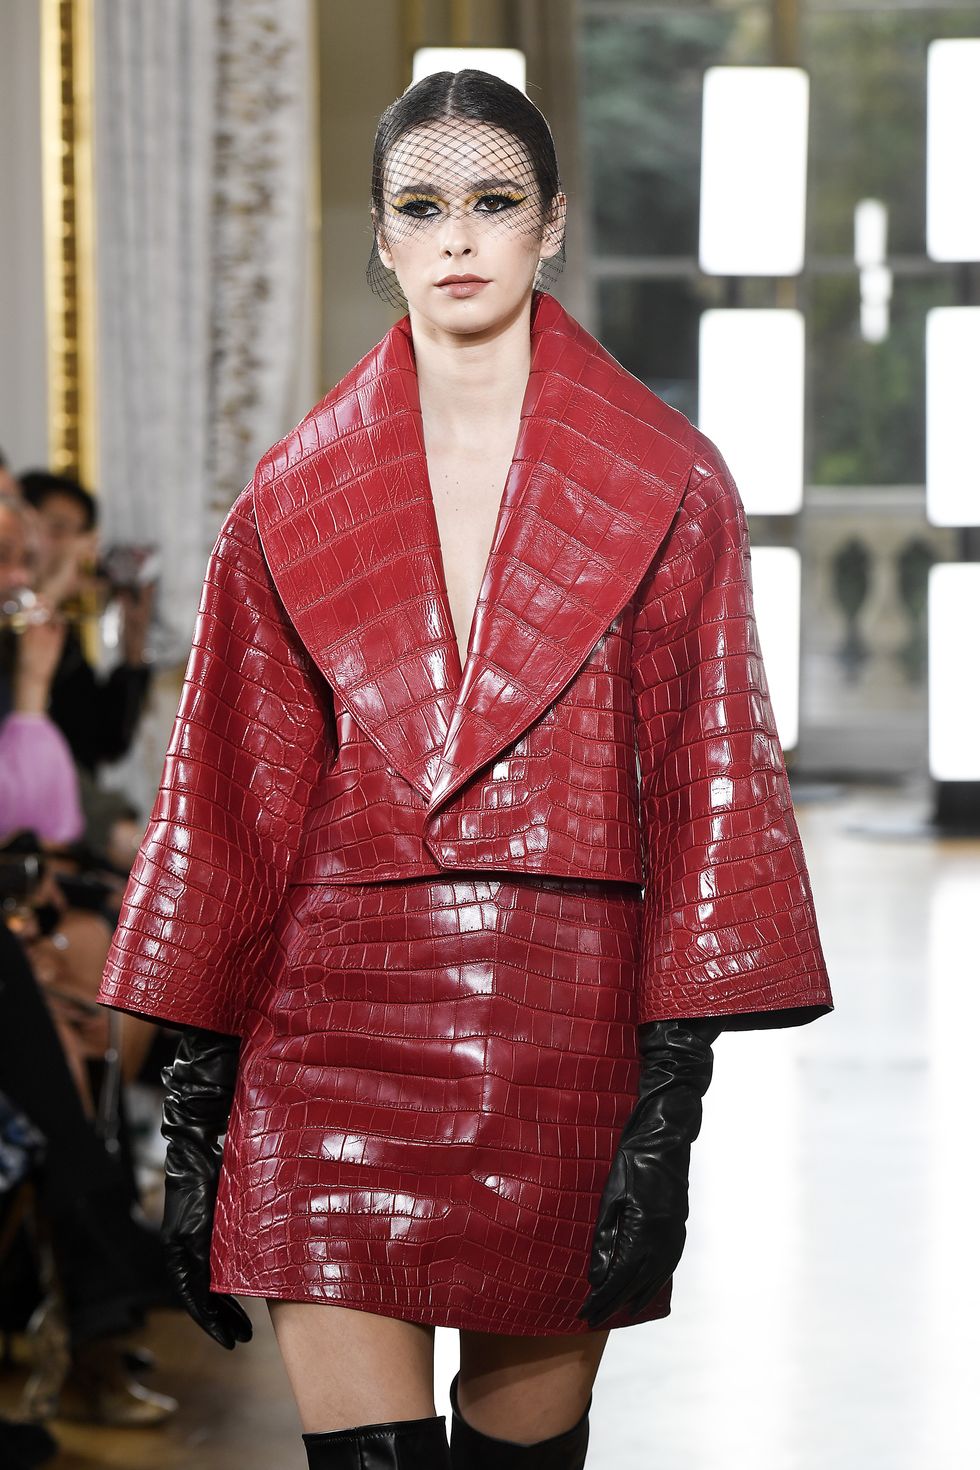 Coco Rocha Helped Label MJZ Make Its Paris Fashion Week Debut